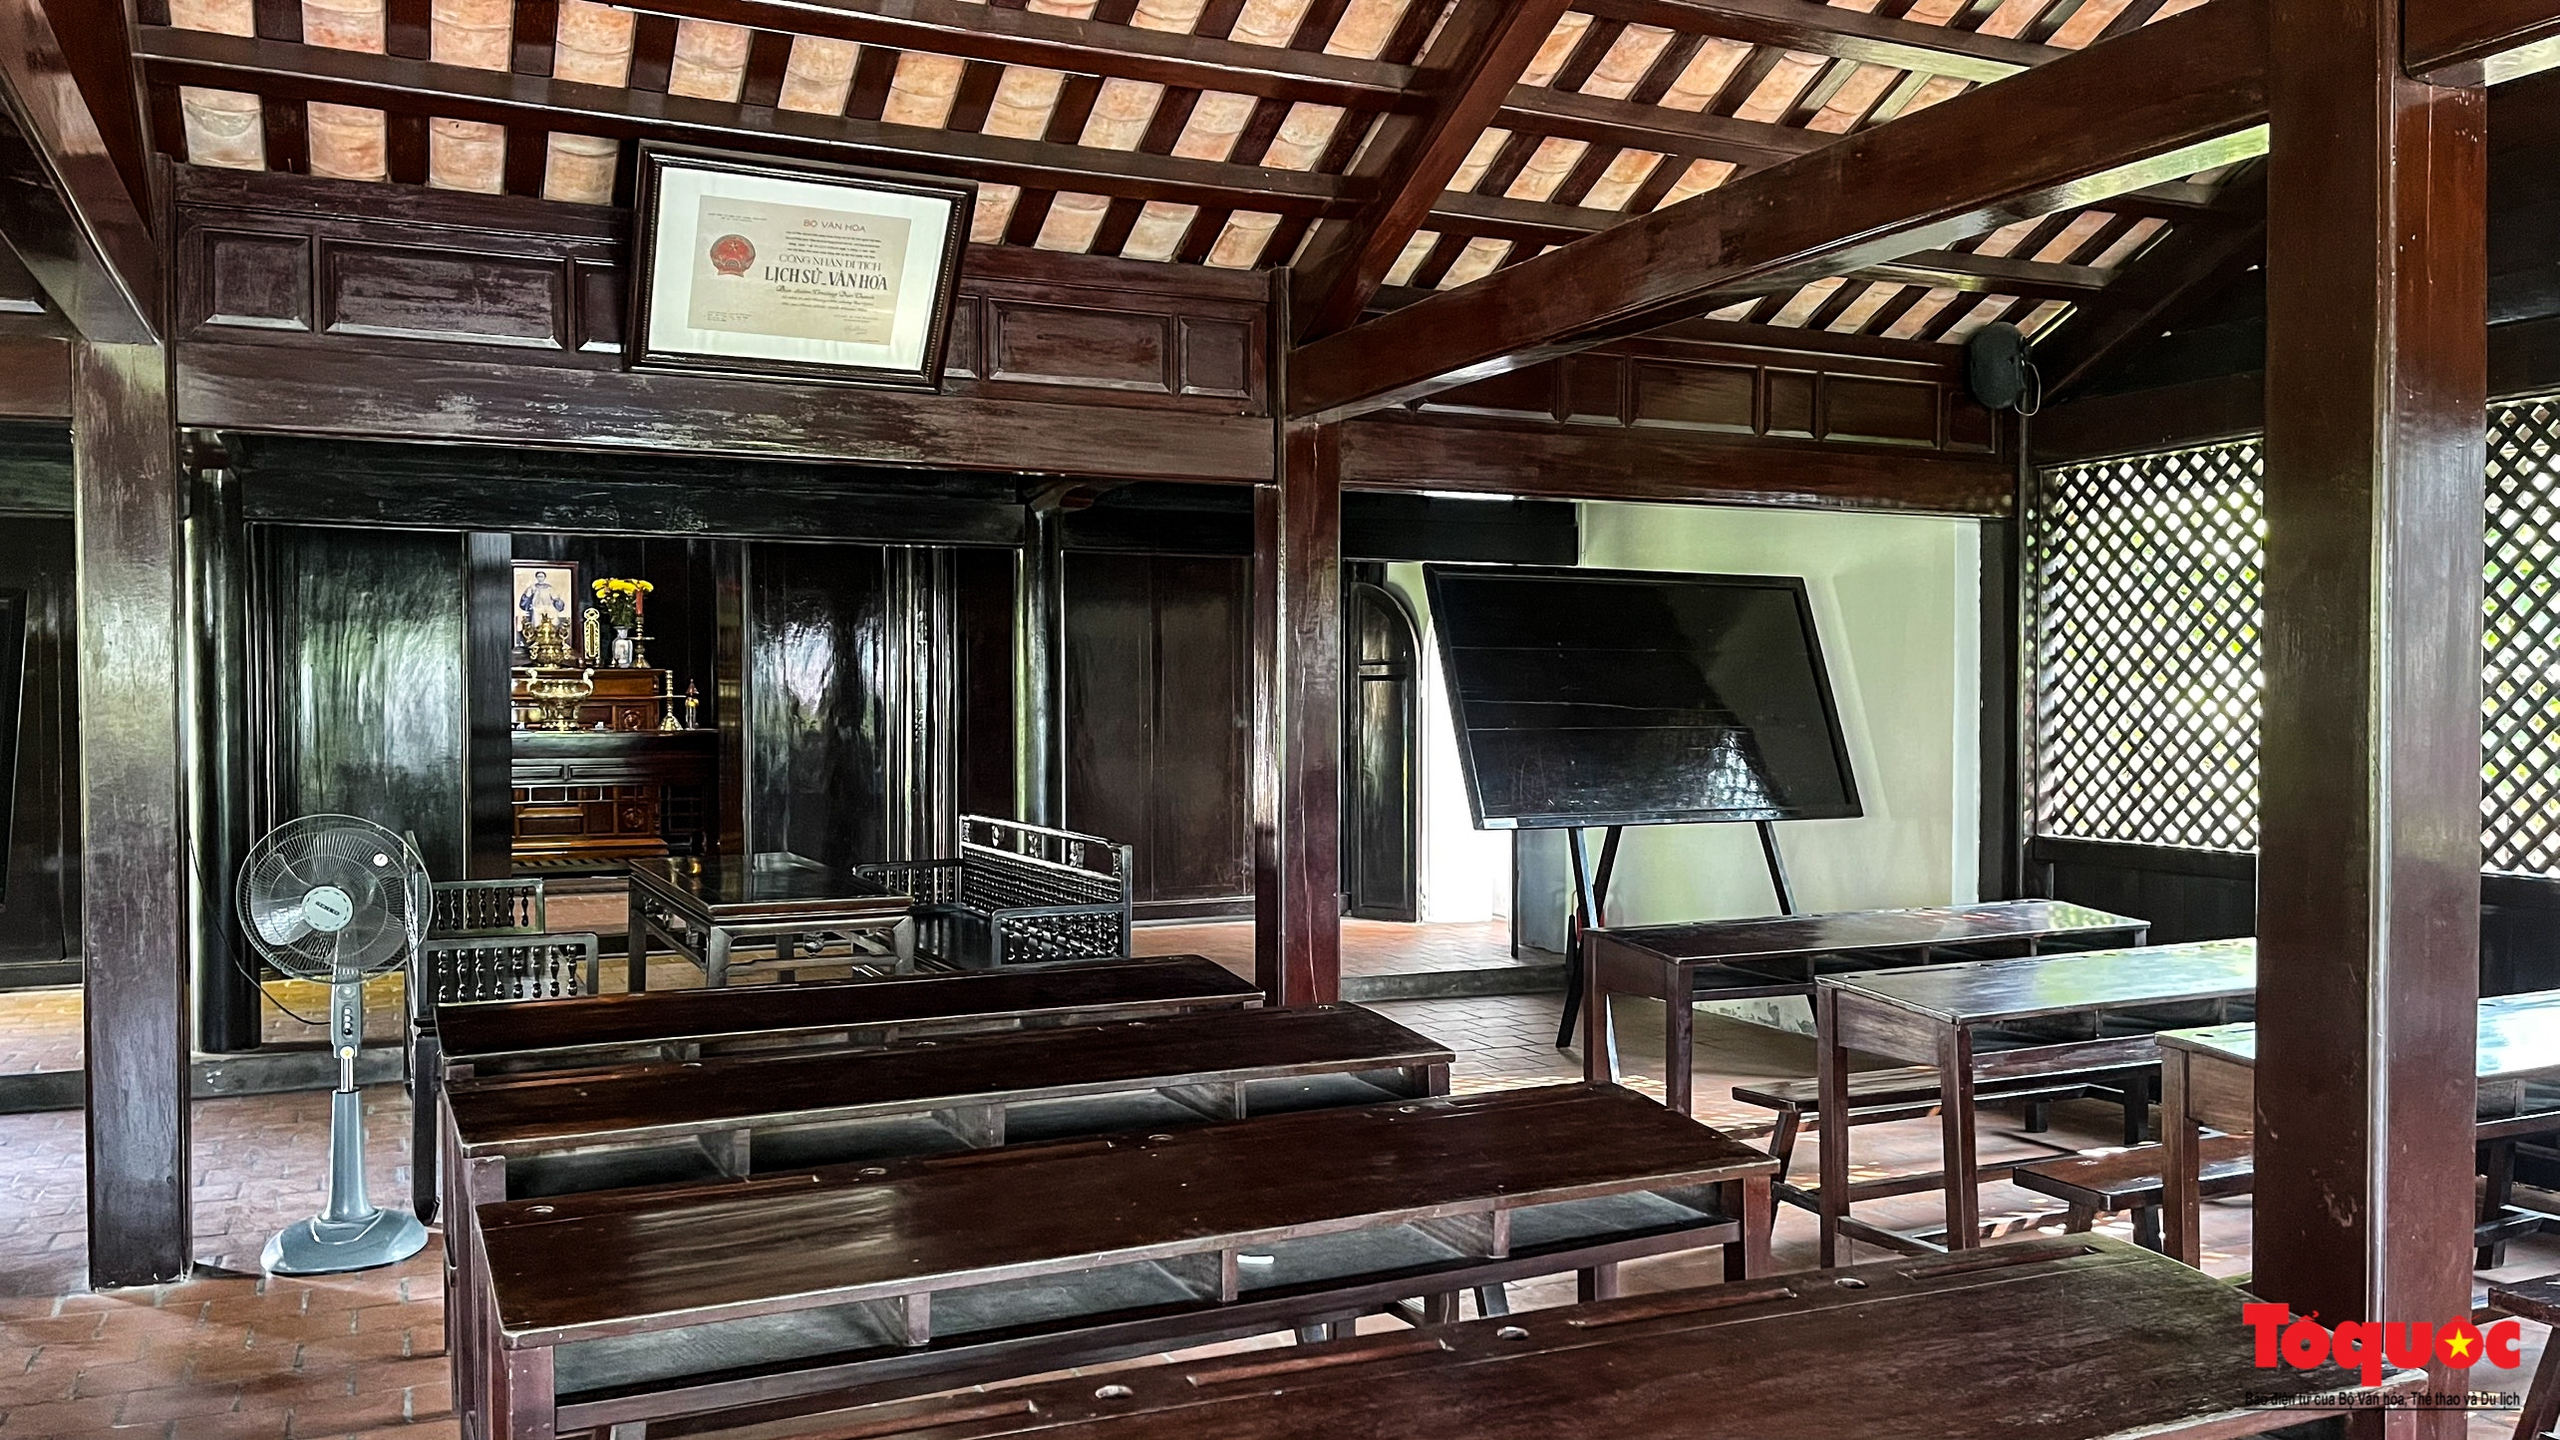 Đến Khu di tích trường Dục Thanh tìm hiểu về cuộc đời cao đẹp của nhà giáo Nguyễn Tất Thành - Ảnh 8.